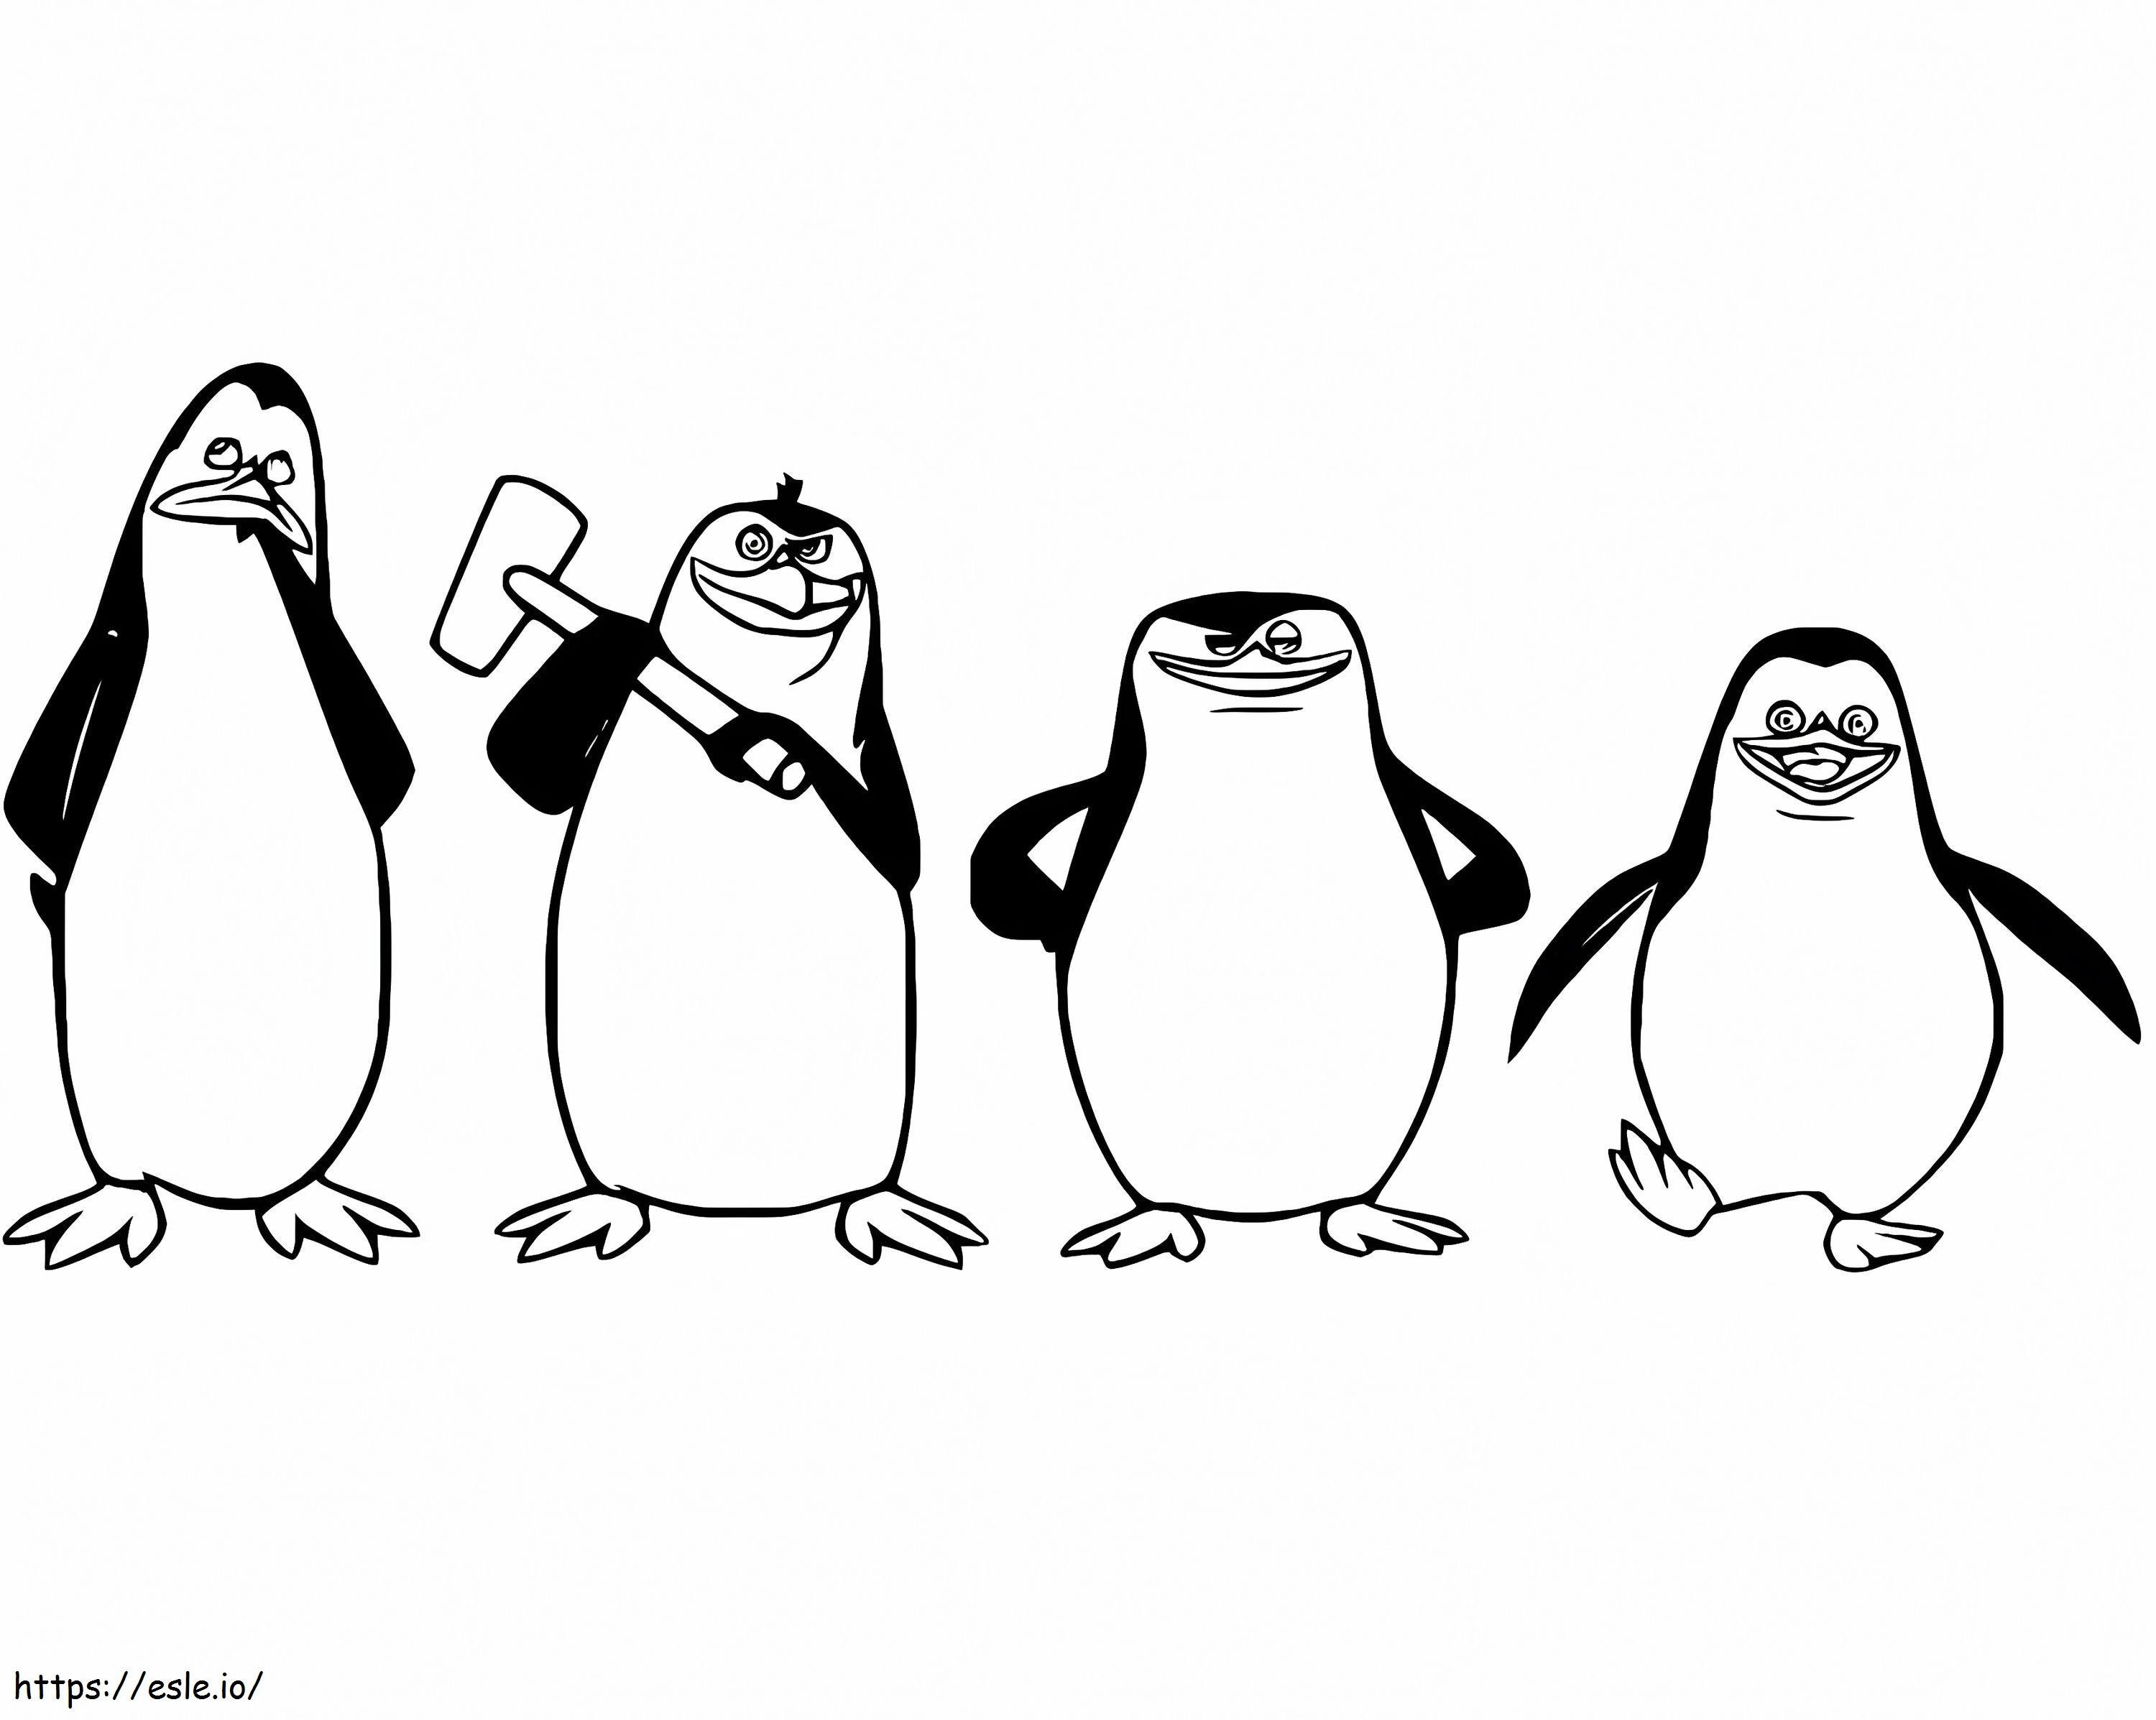 Coloriage Pingouins gratuits de Madagascar à imprimer dessin